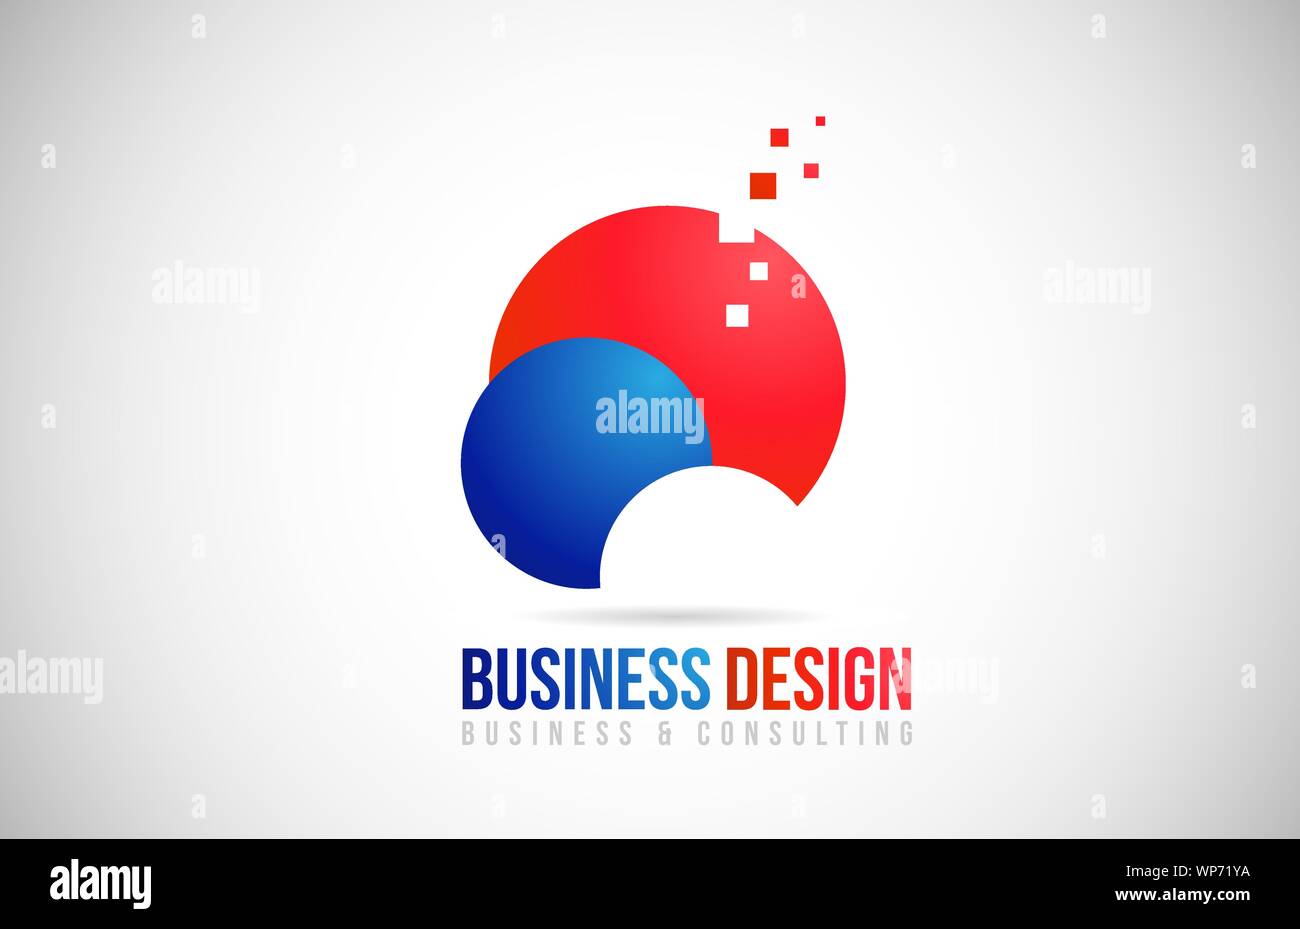 Business Consulting logo design icona con il cerchio rosso e blu. Corporate identity logotipo Illustrazione Vettoriale